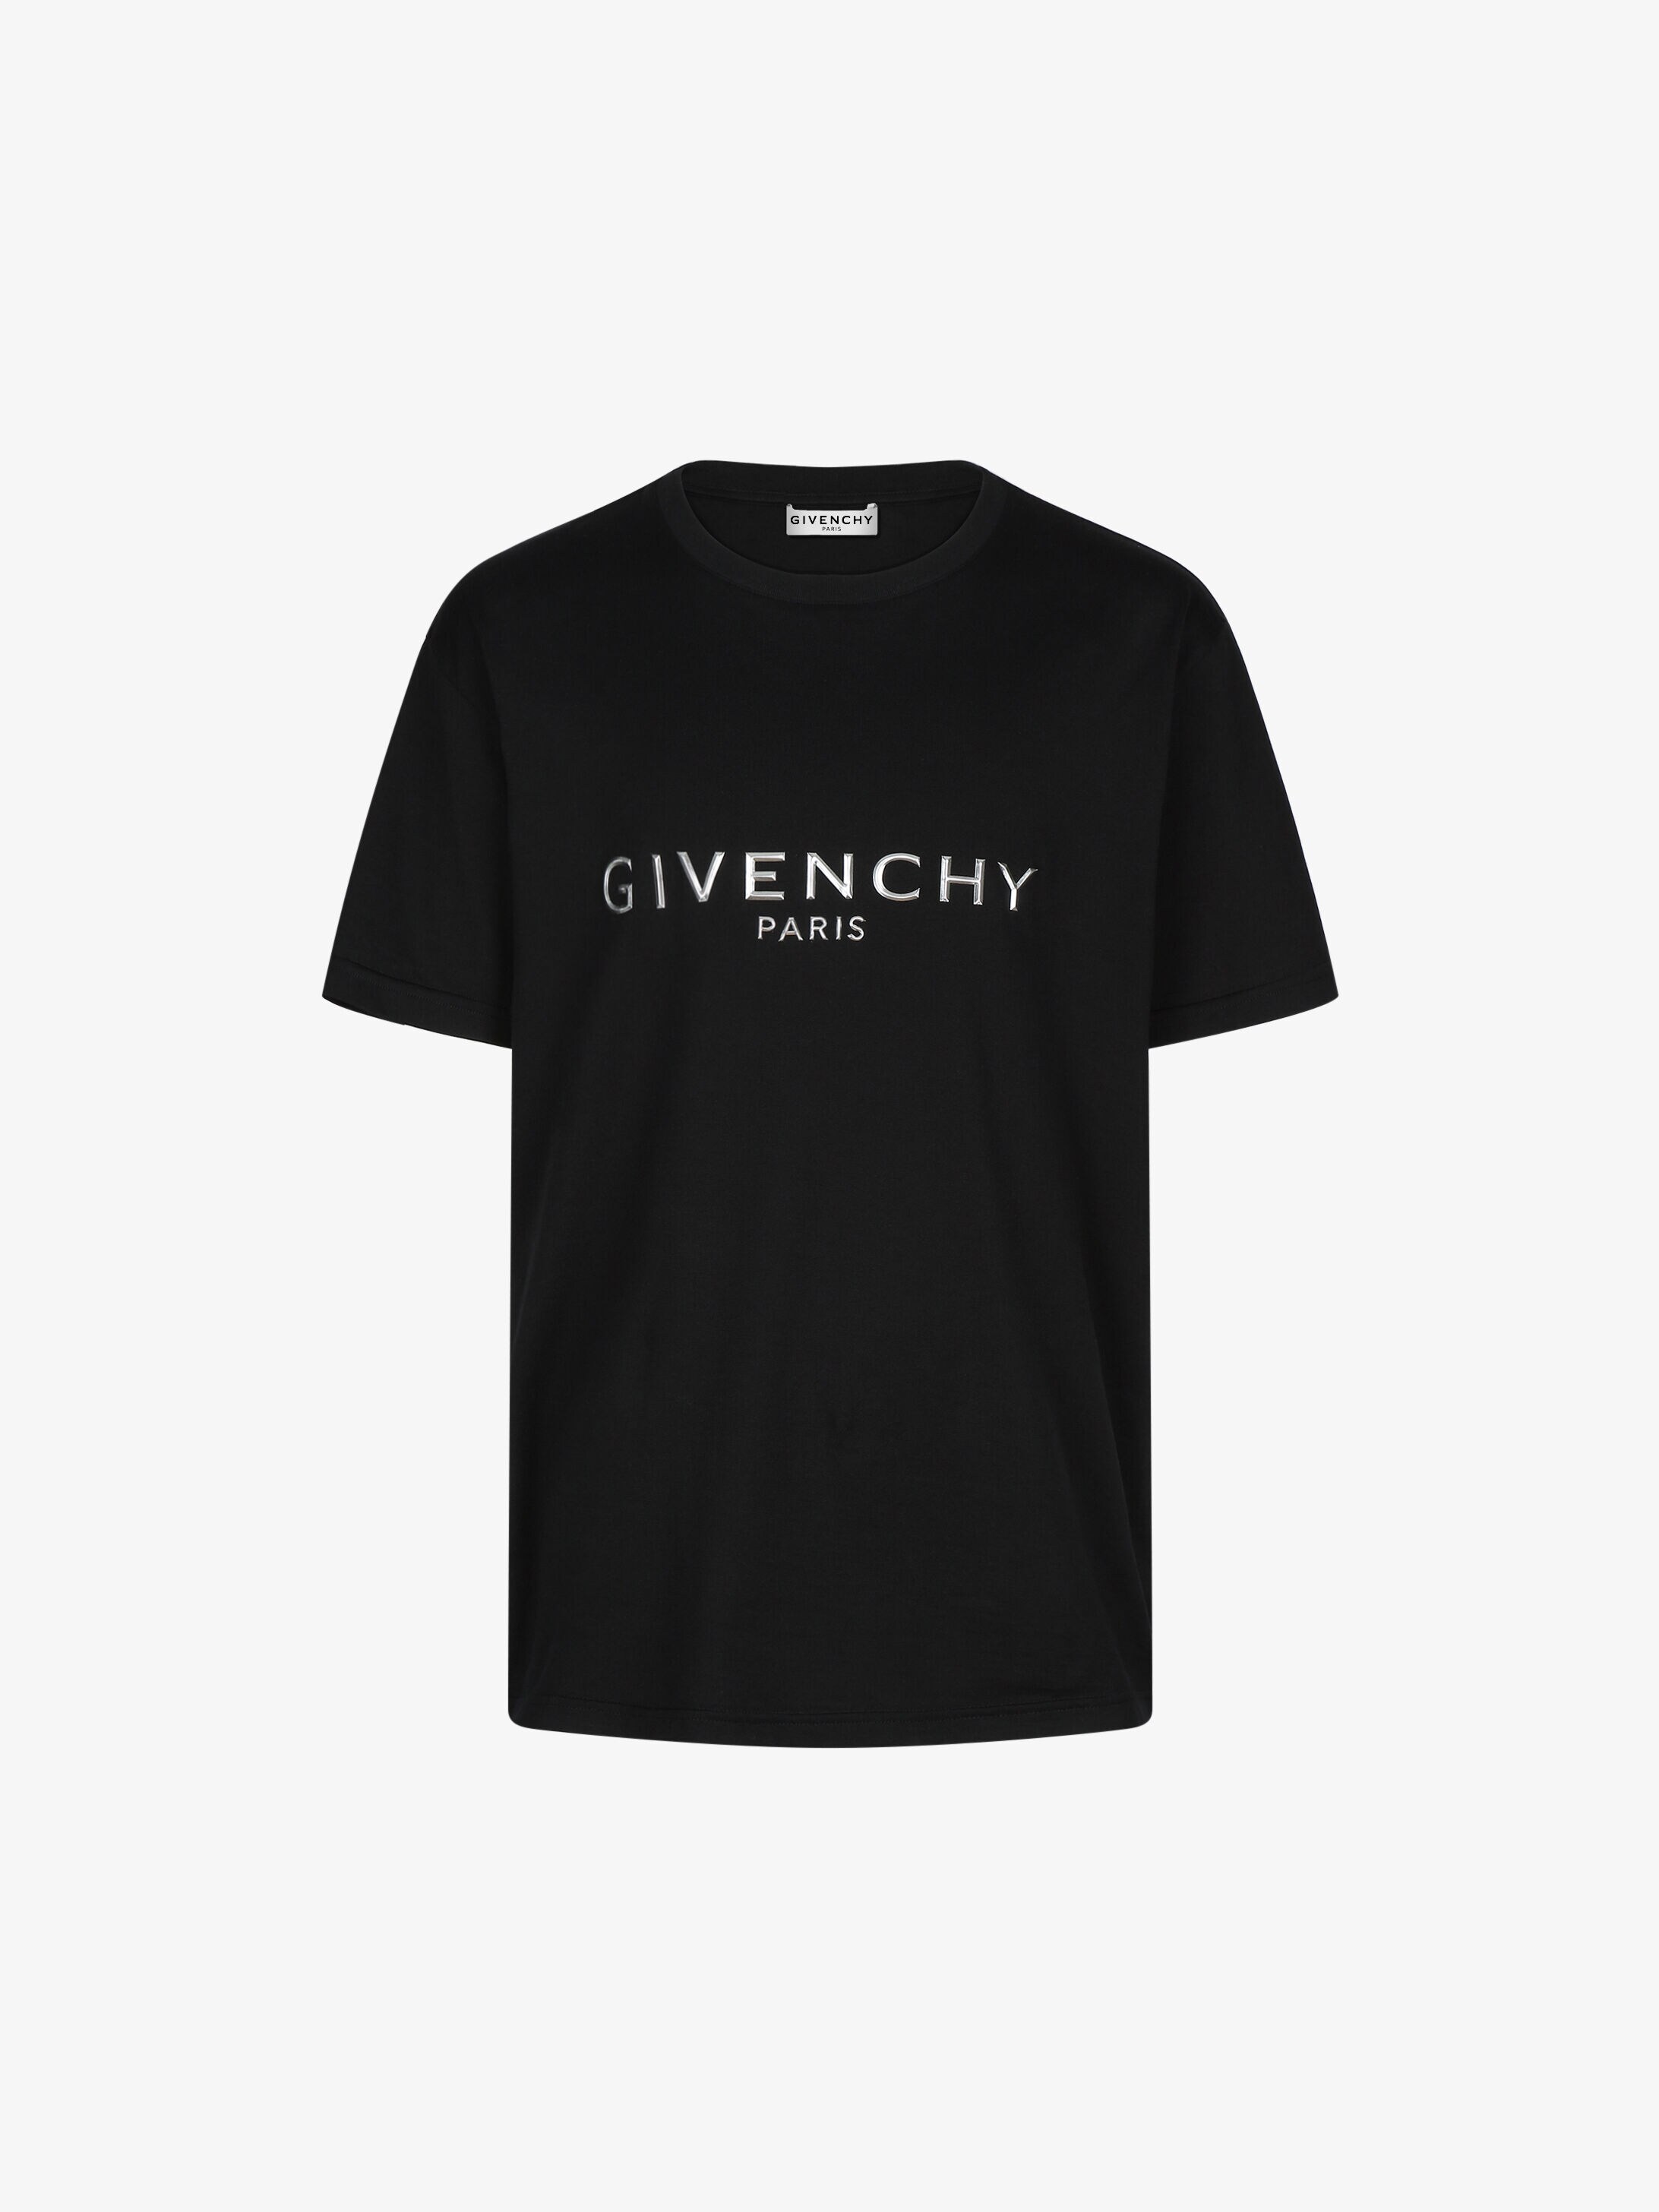 givency shirt